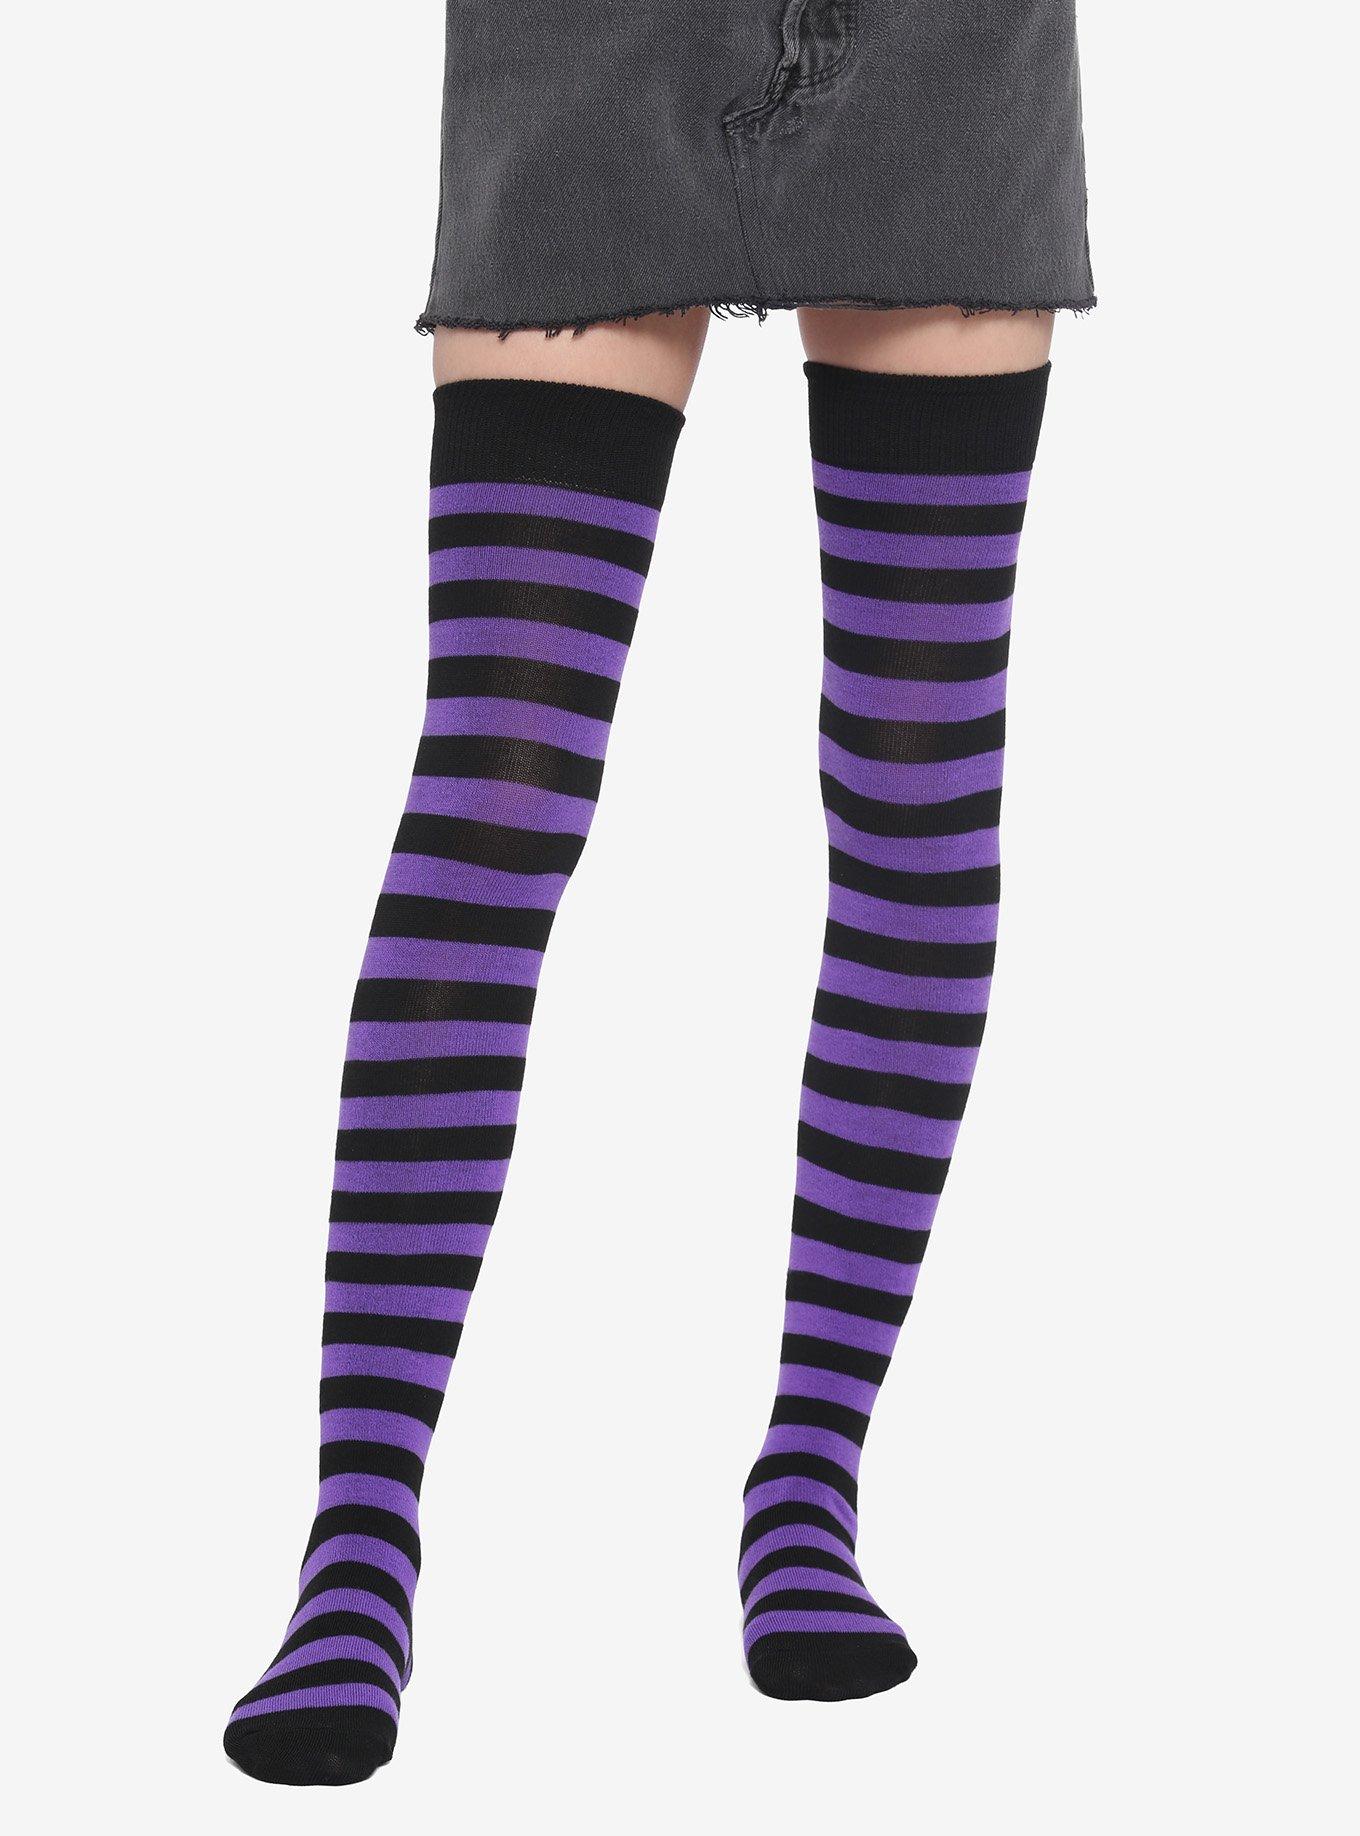 Jefferies Socks Stripe Knee High Tube Socks - Purple